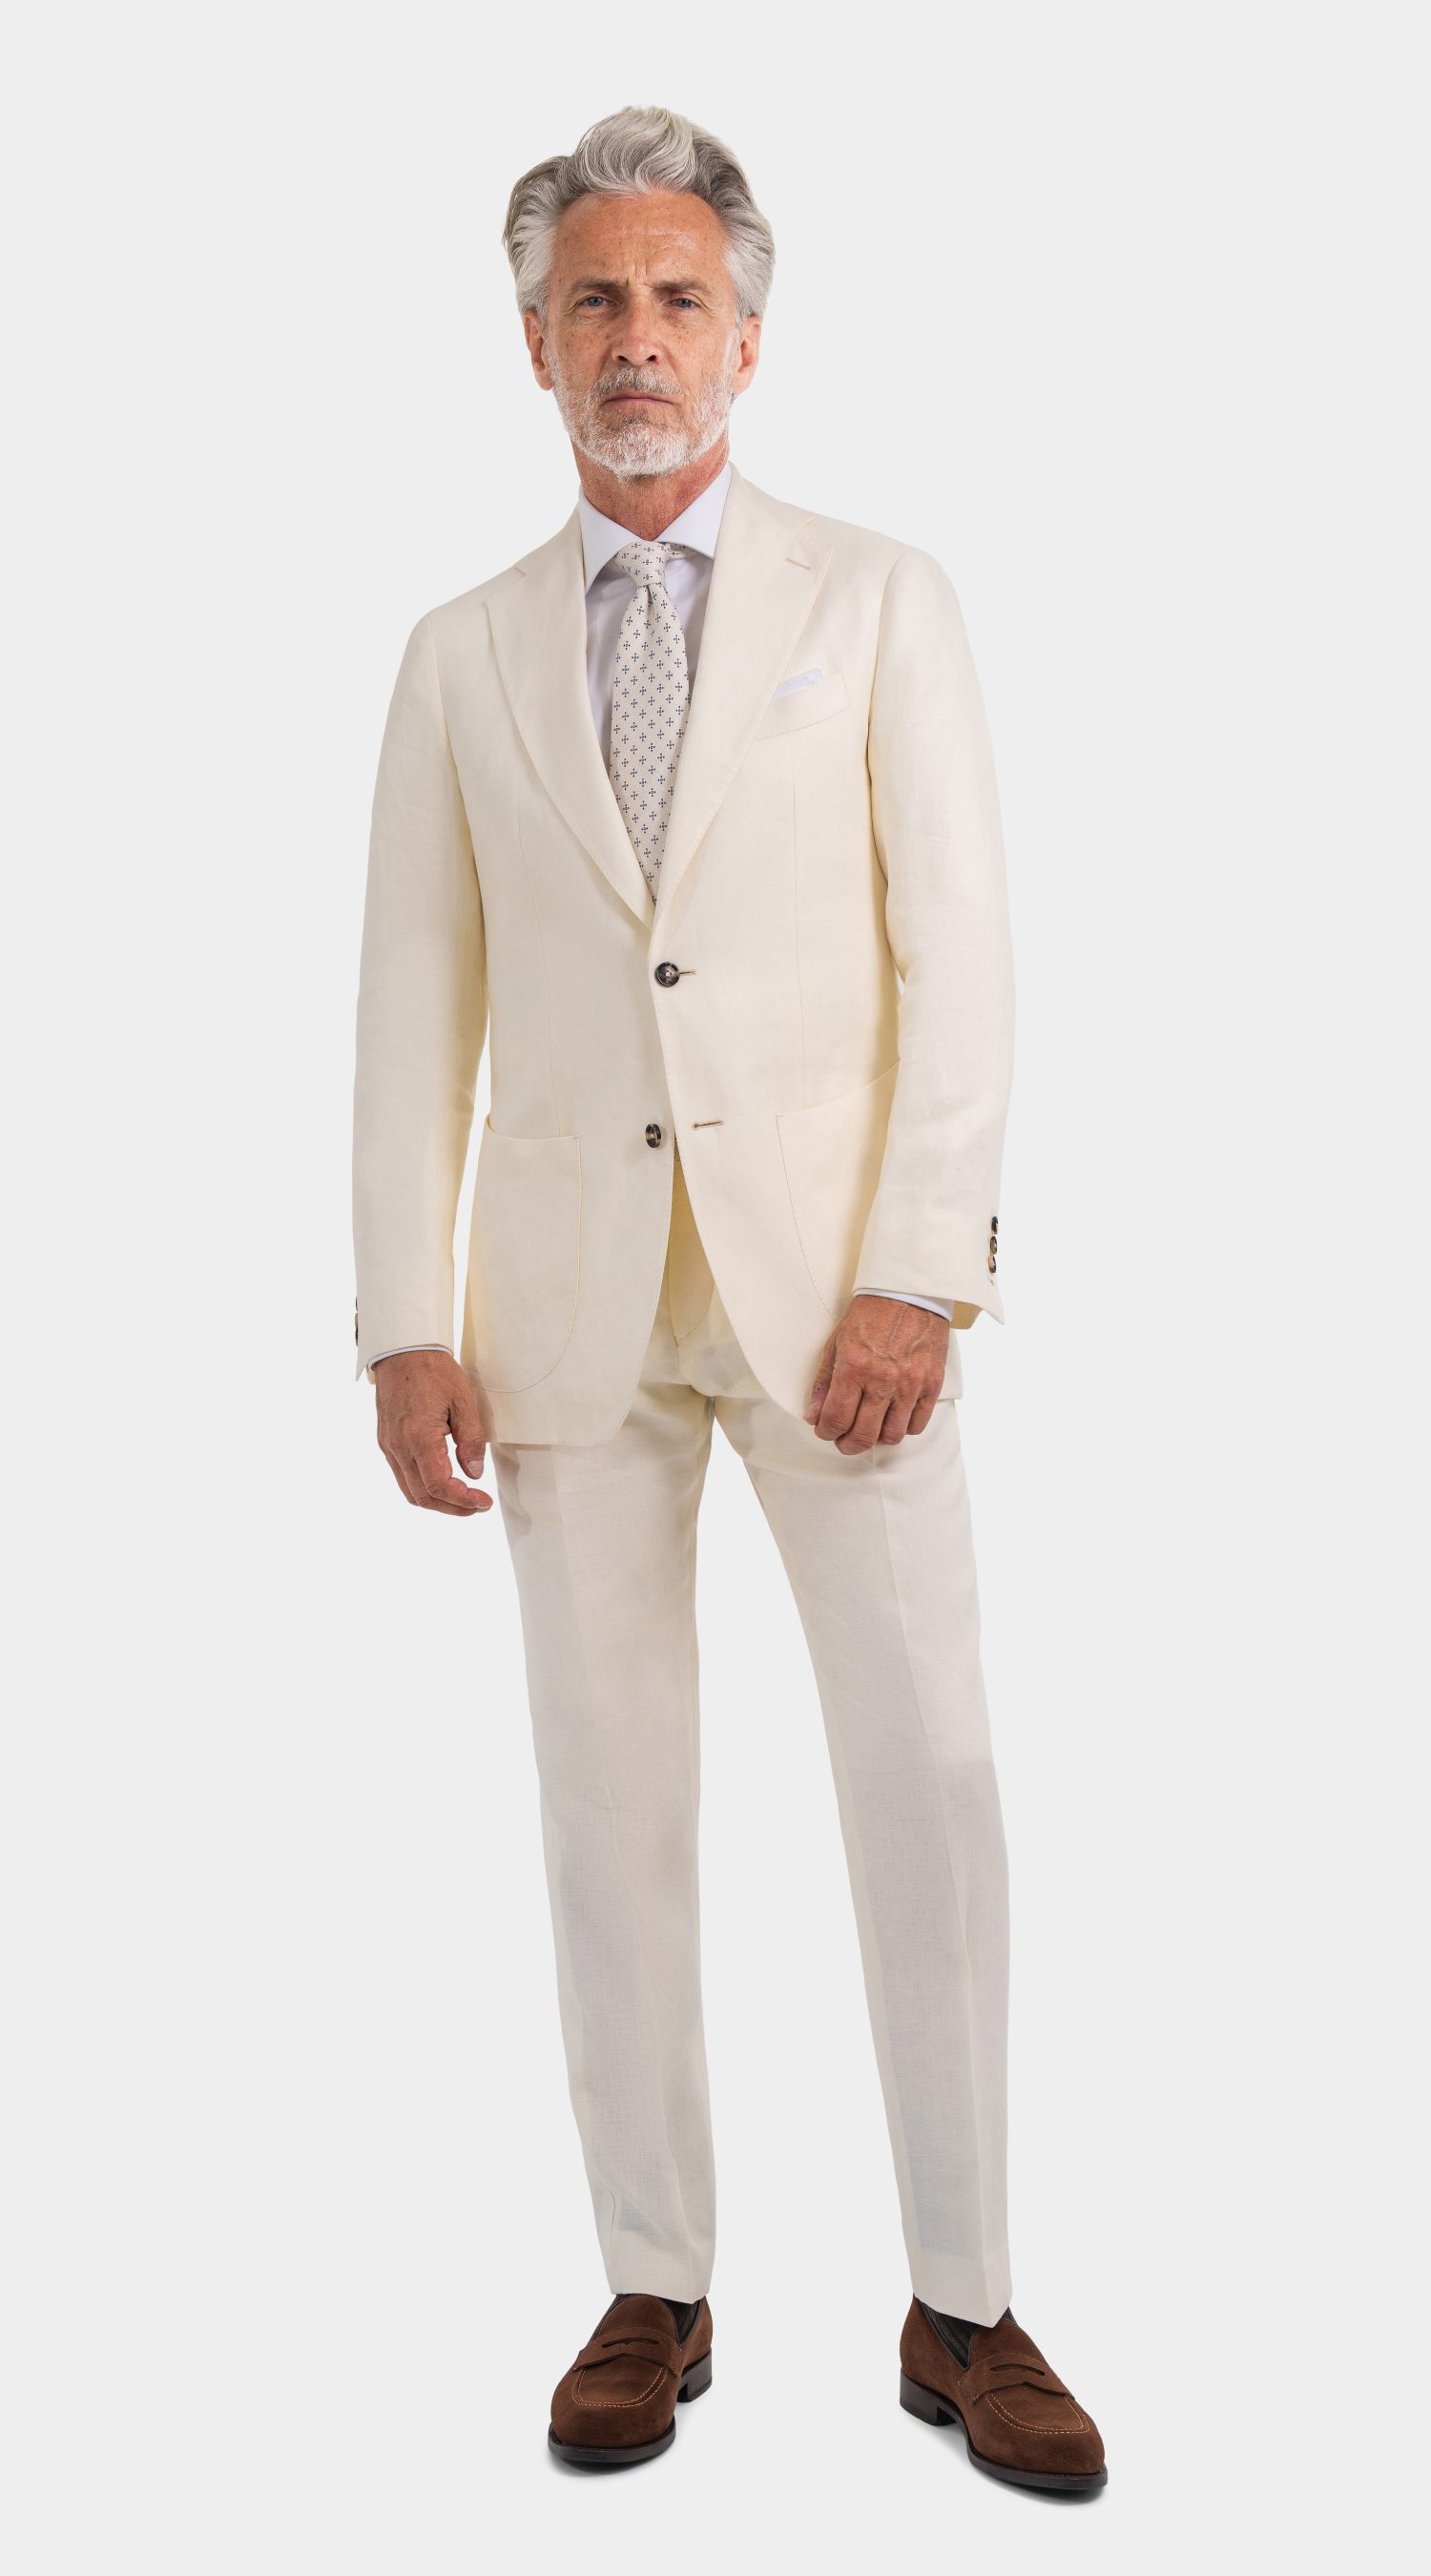 Mond of Copenhagen Ivory Linen Suit, herren anzug creme hochzeit